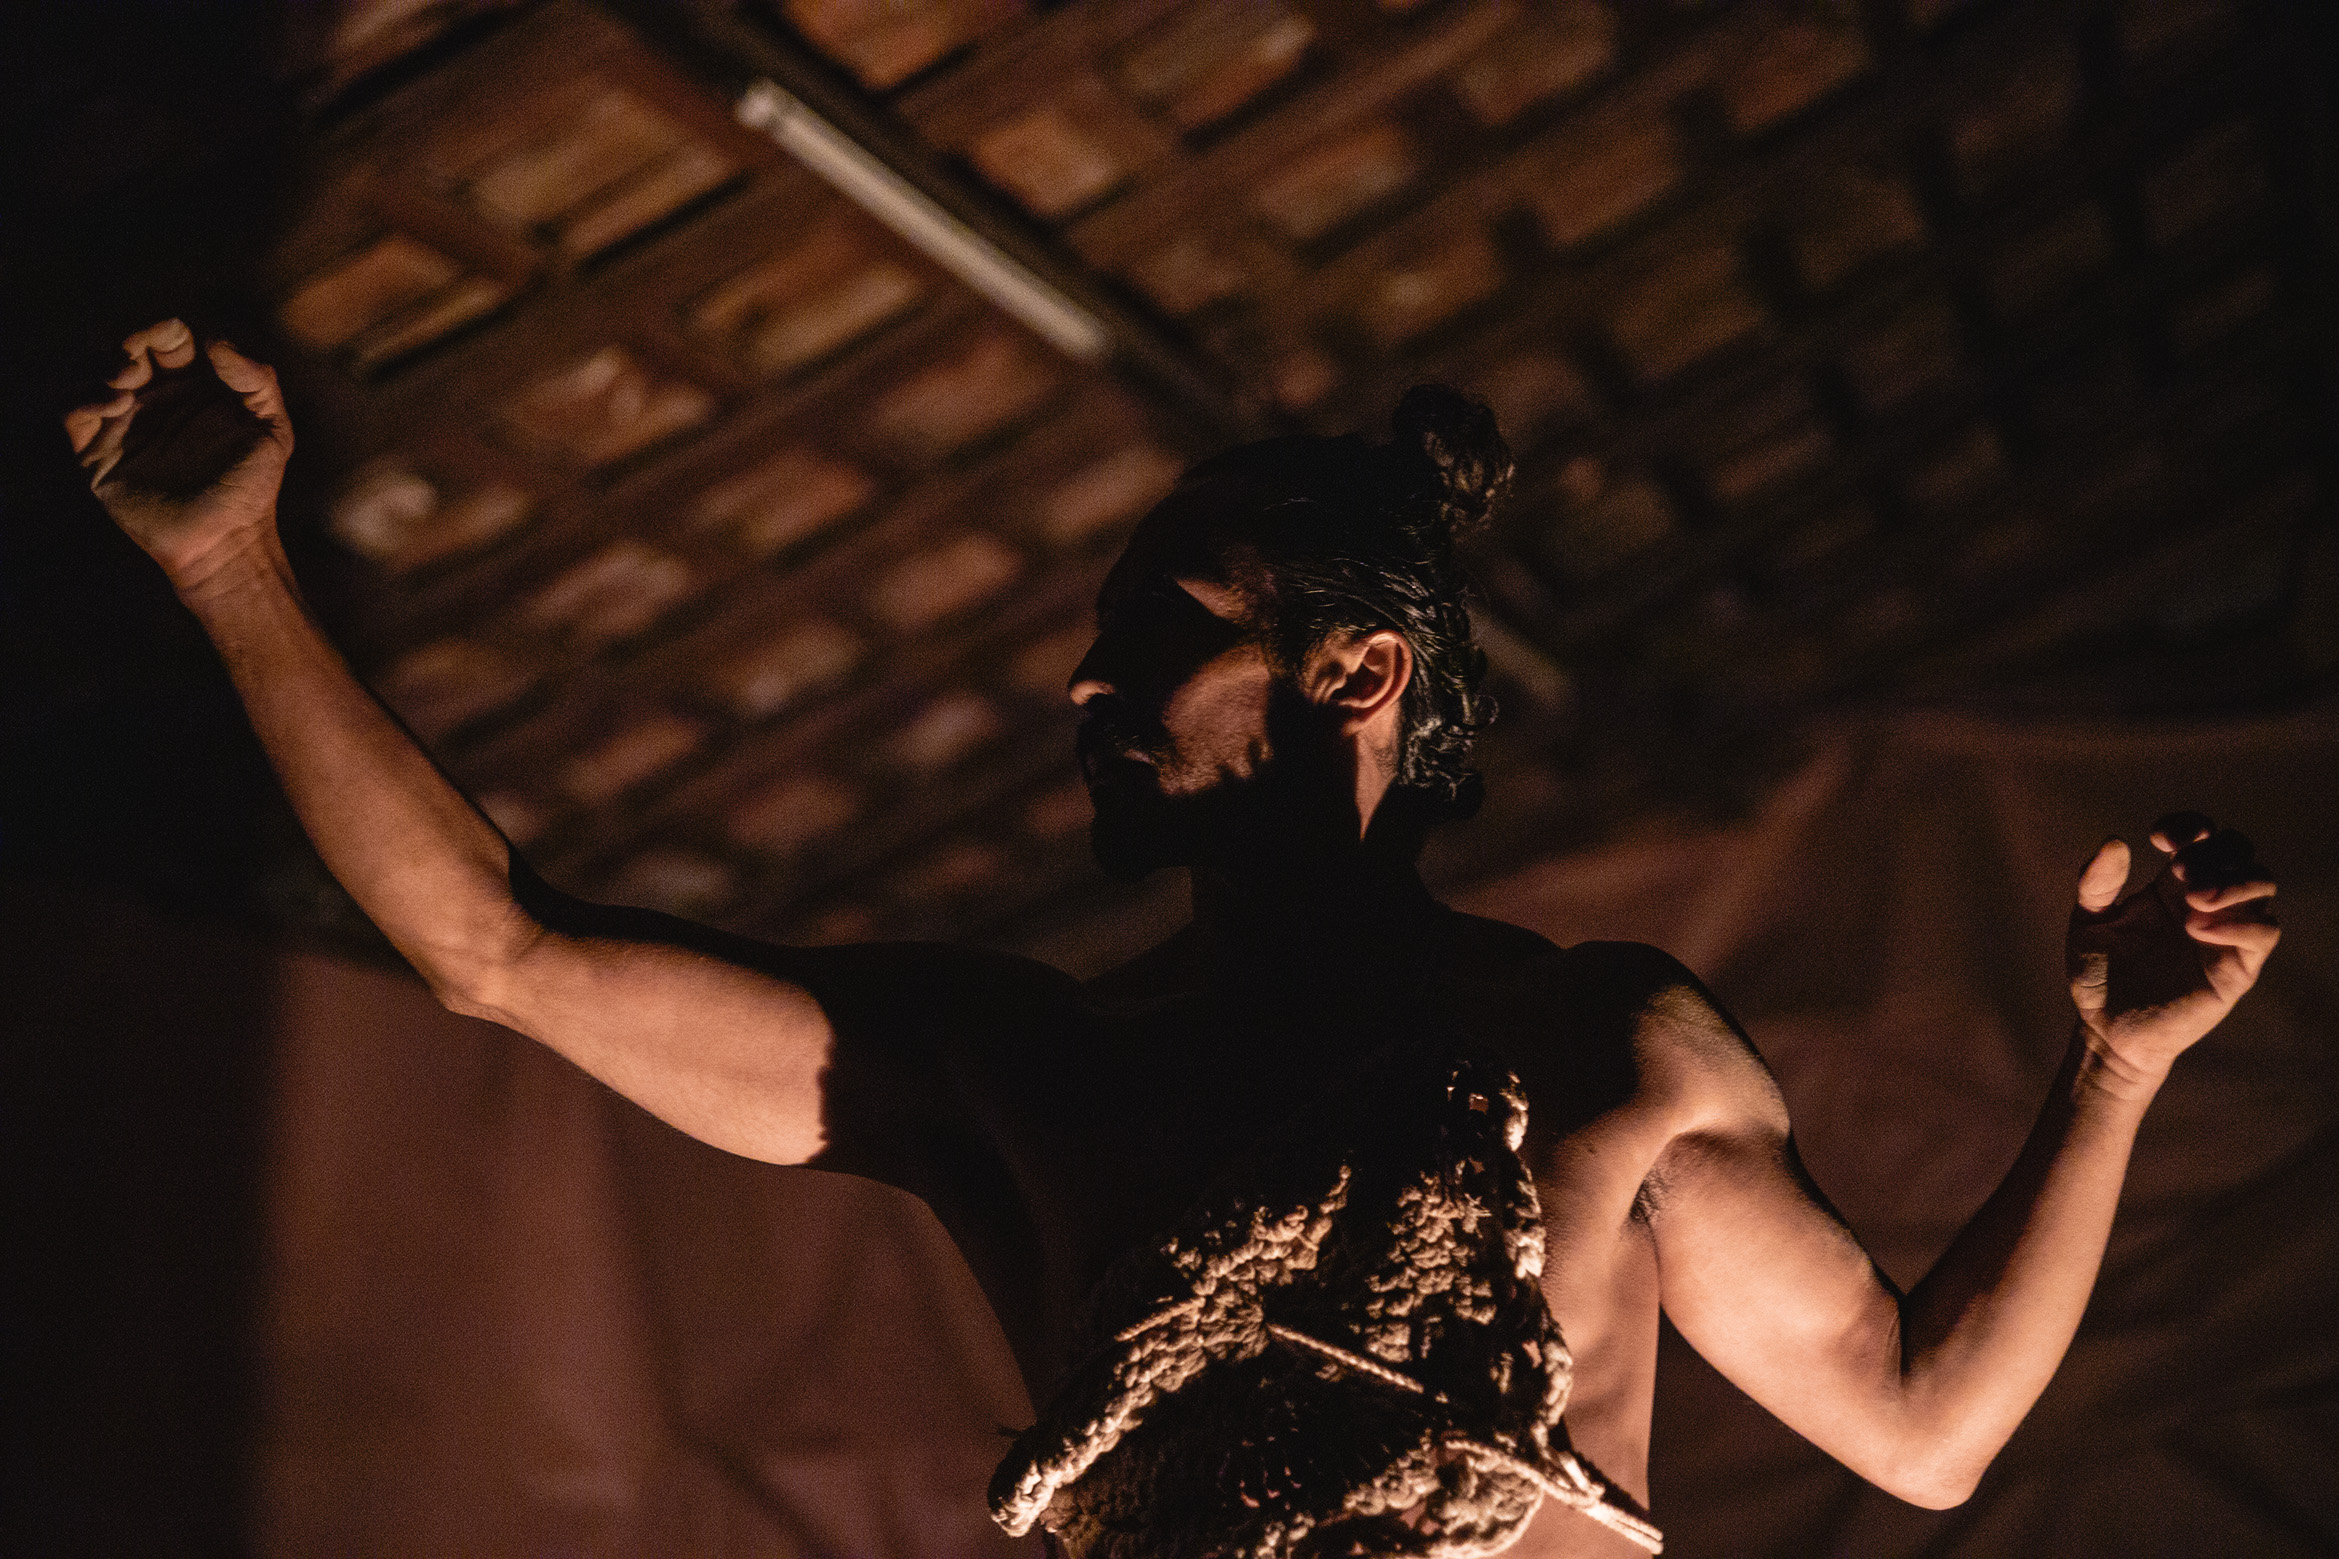 Compañía de danza contemporánea La Serpiente revela el itinerario de sus nuevas presentaciones